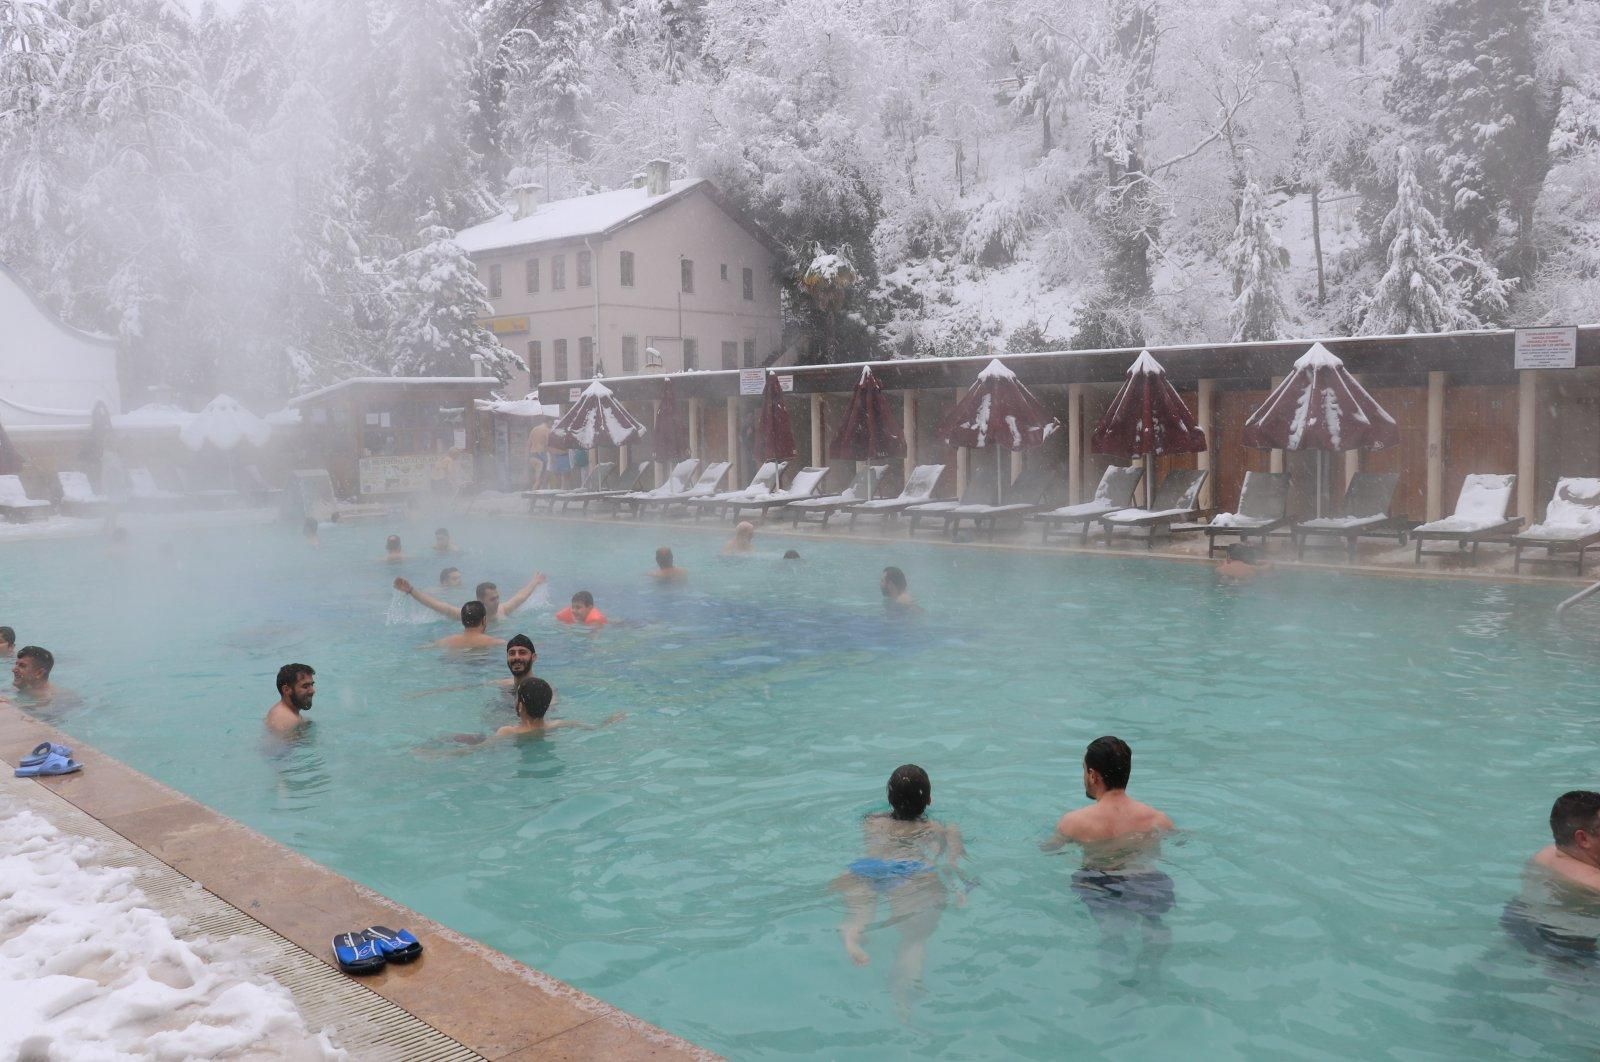 Пол миллиона туристов в год: какой городок в Турции привлекает термальными купальнями - Отпуск